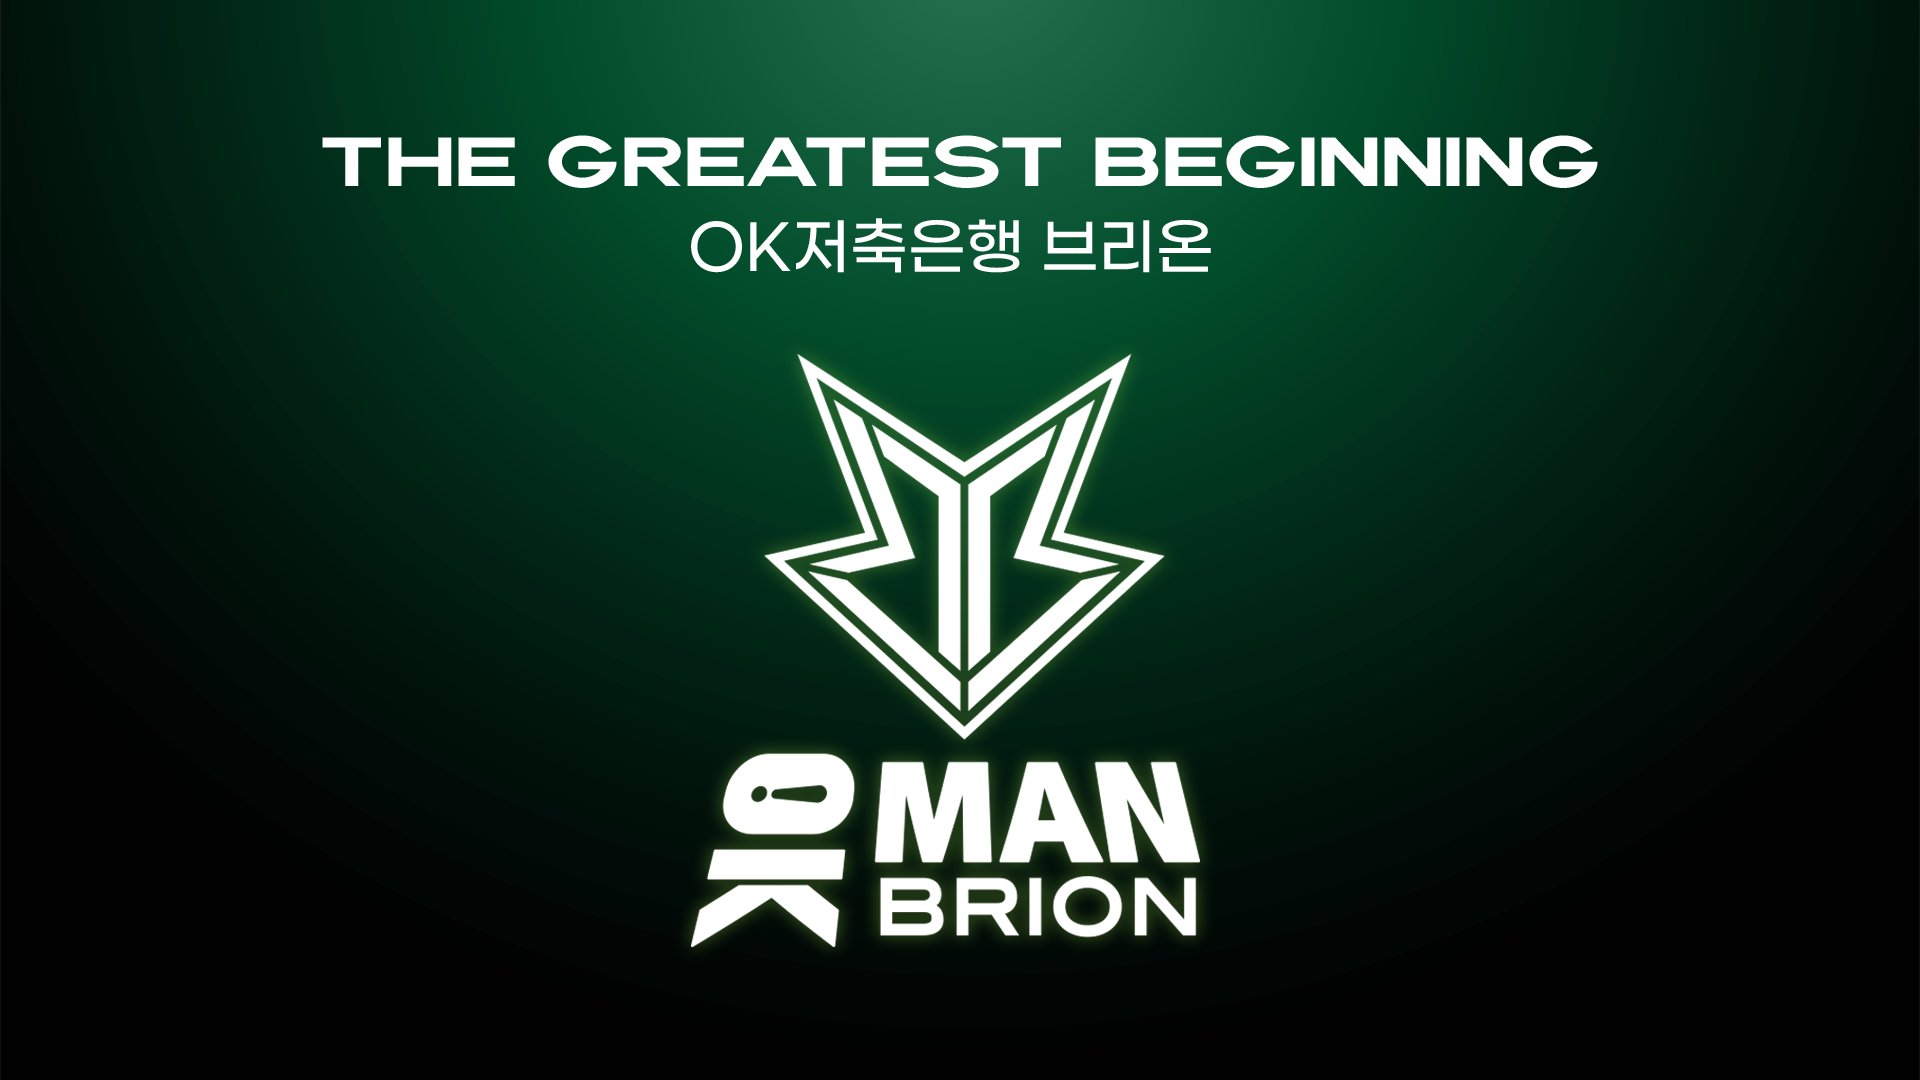 OK BRO! Korejská organizace rebranduje s novým partnerem